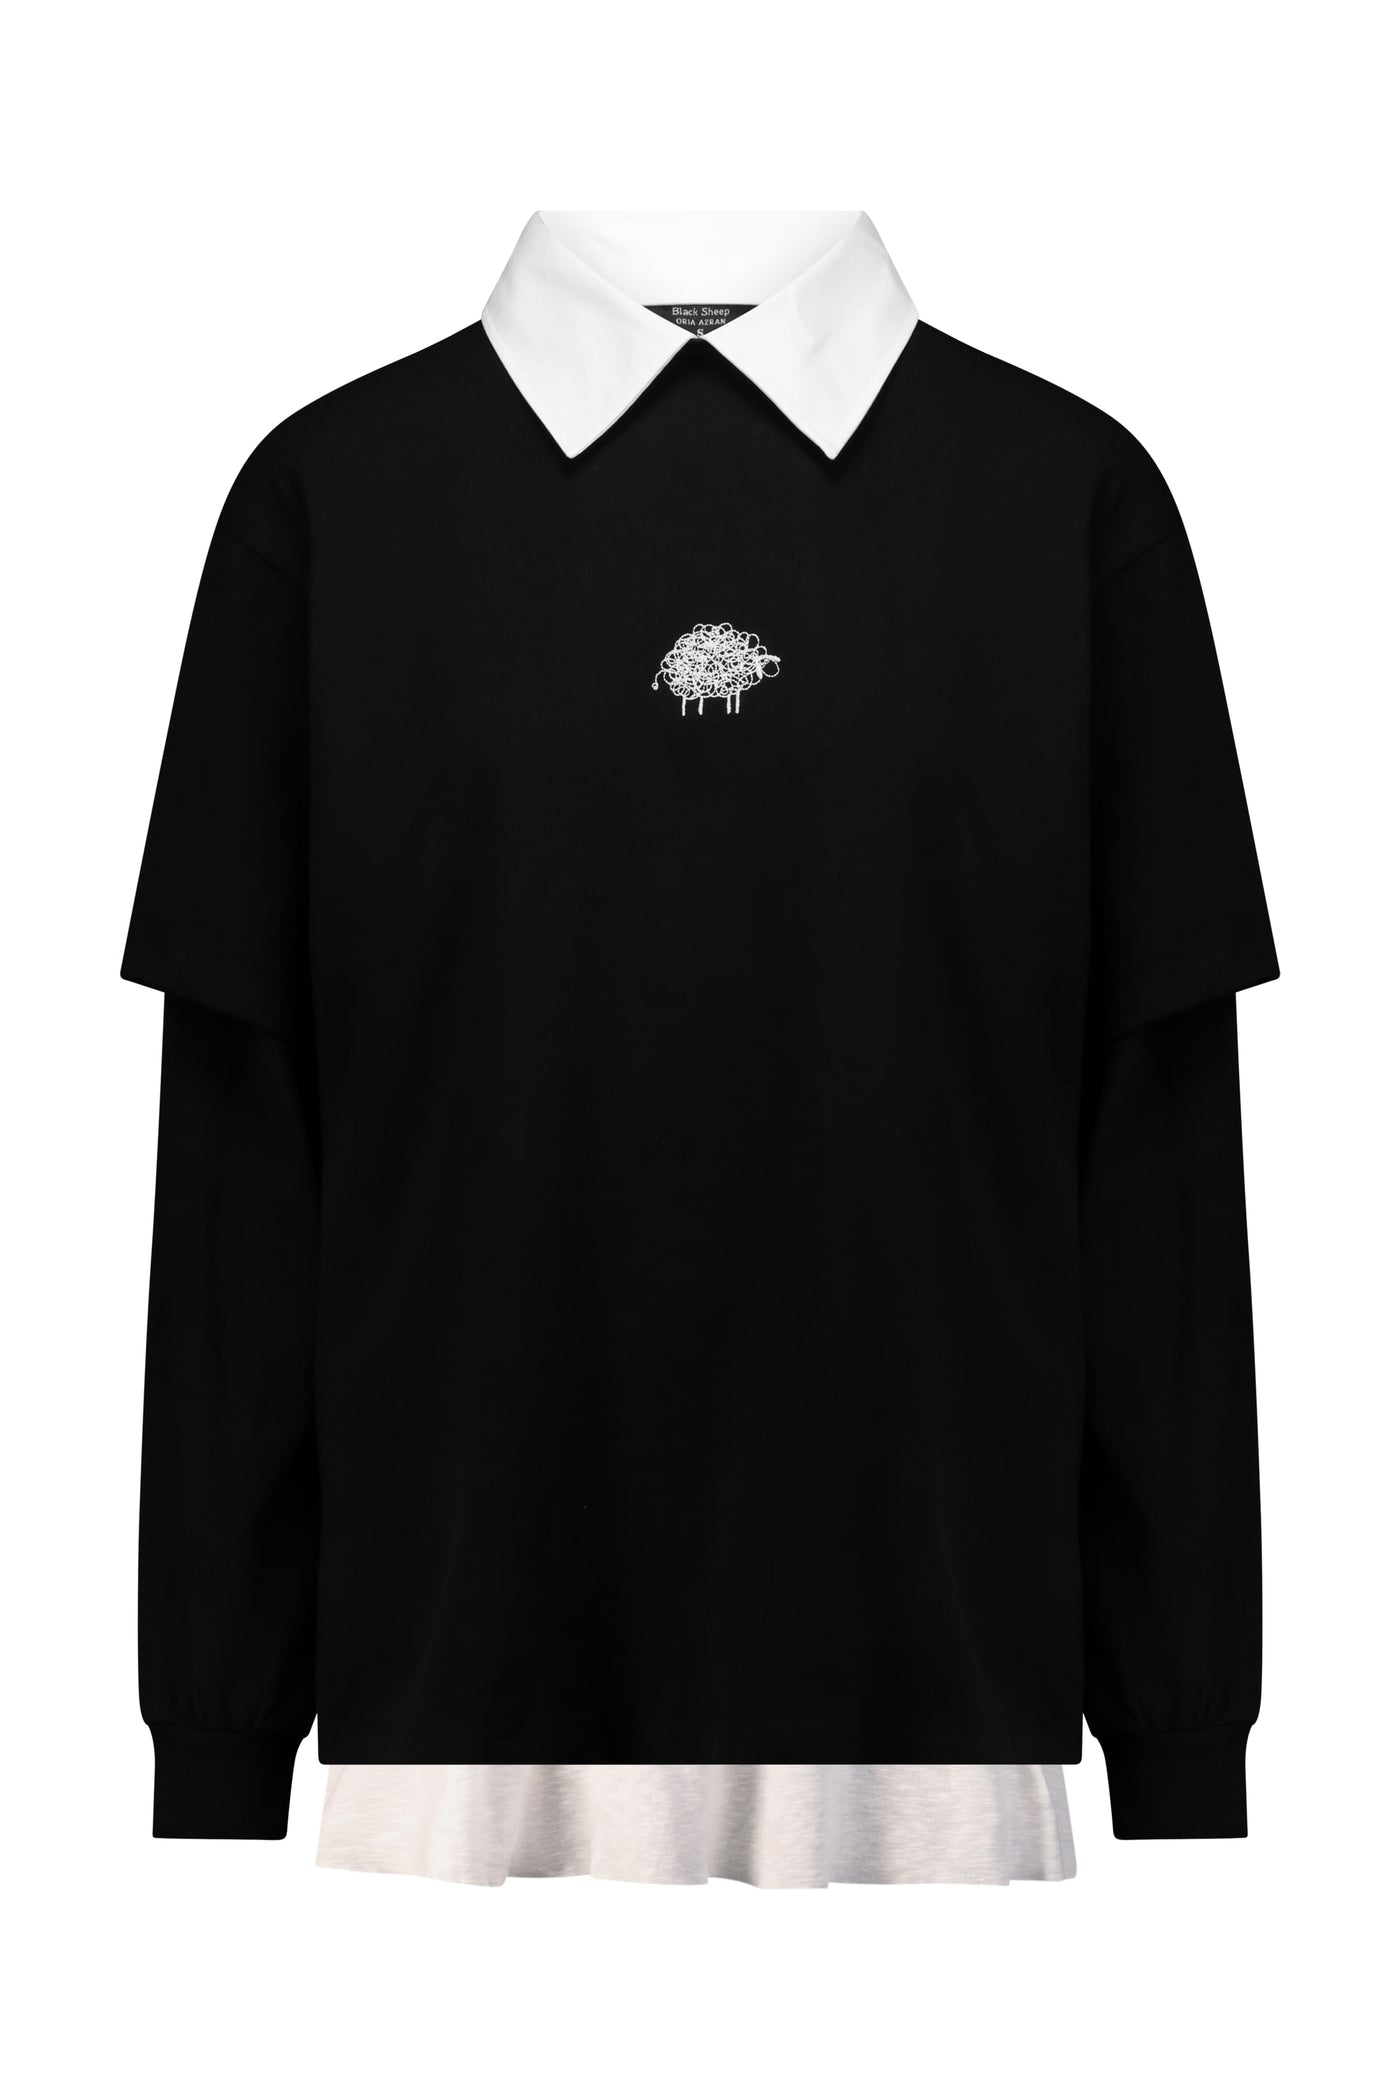 חולצת Black Sheep- ארוכה שחורה יוניסקס